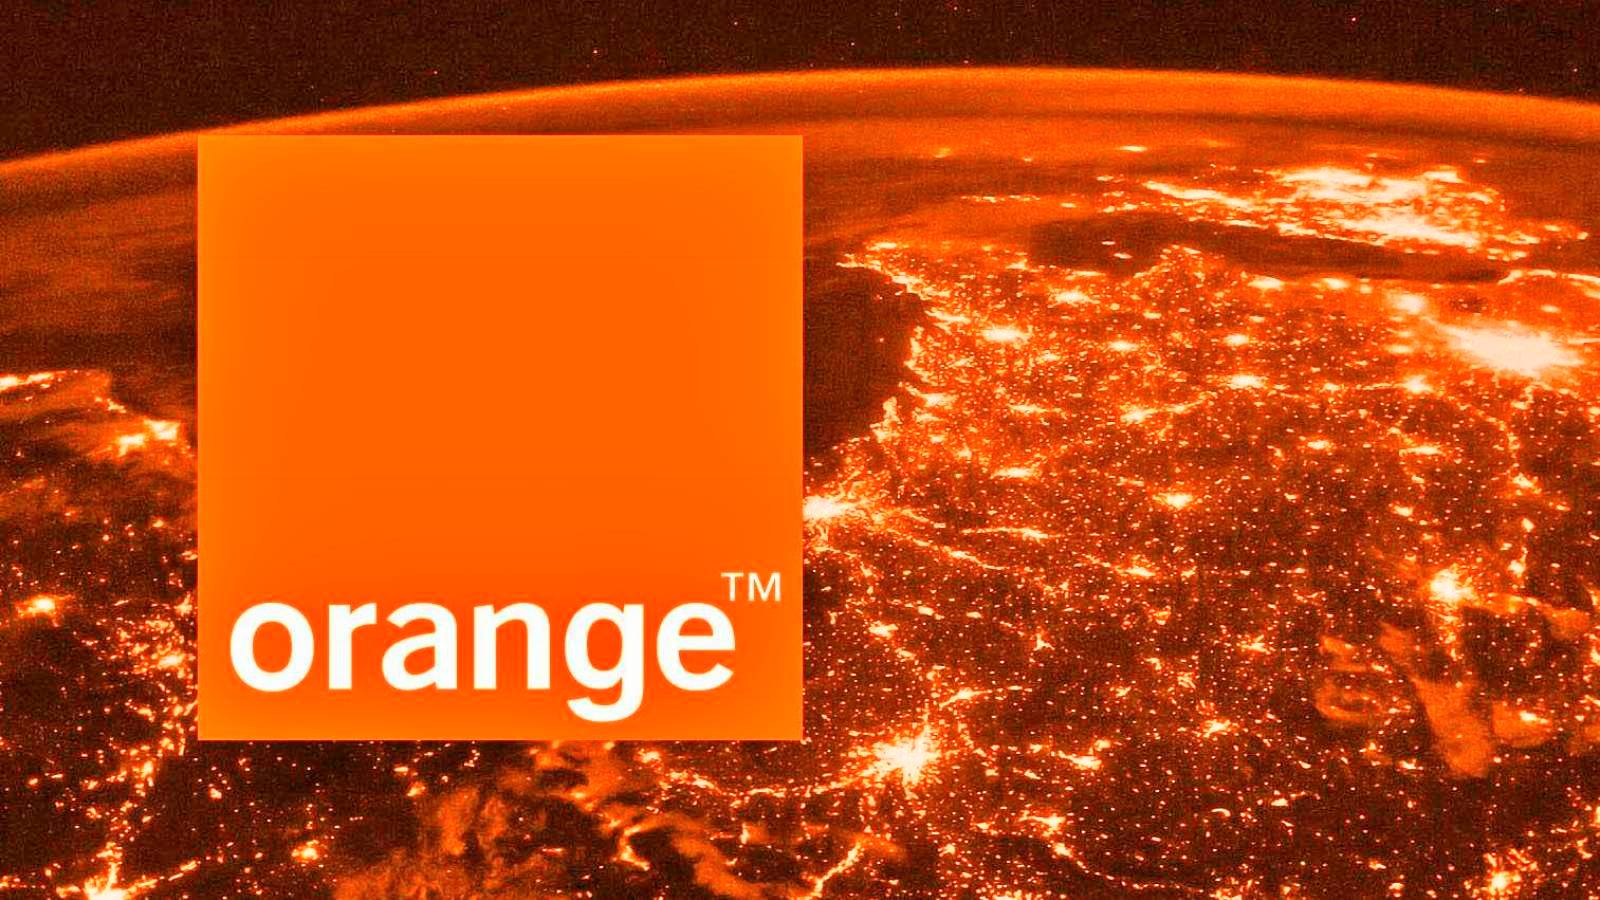 Orange Colossal Surprise annoncerede gratis Netflix i 12 MÅNEDER til kunder